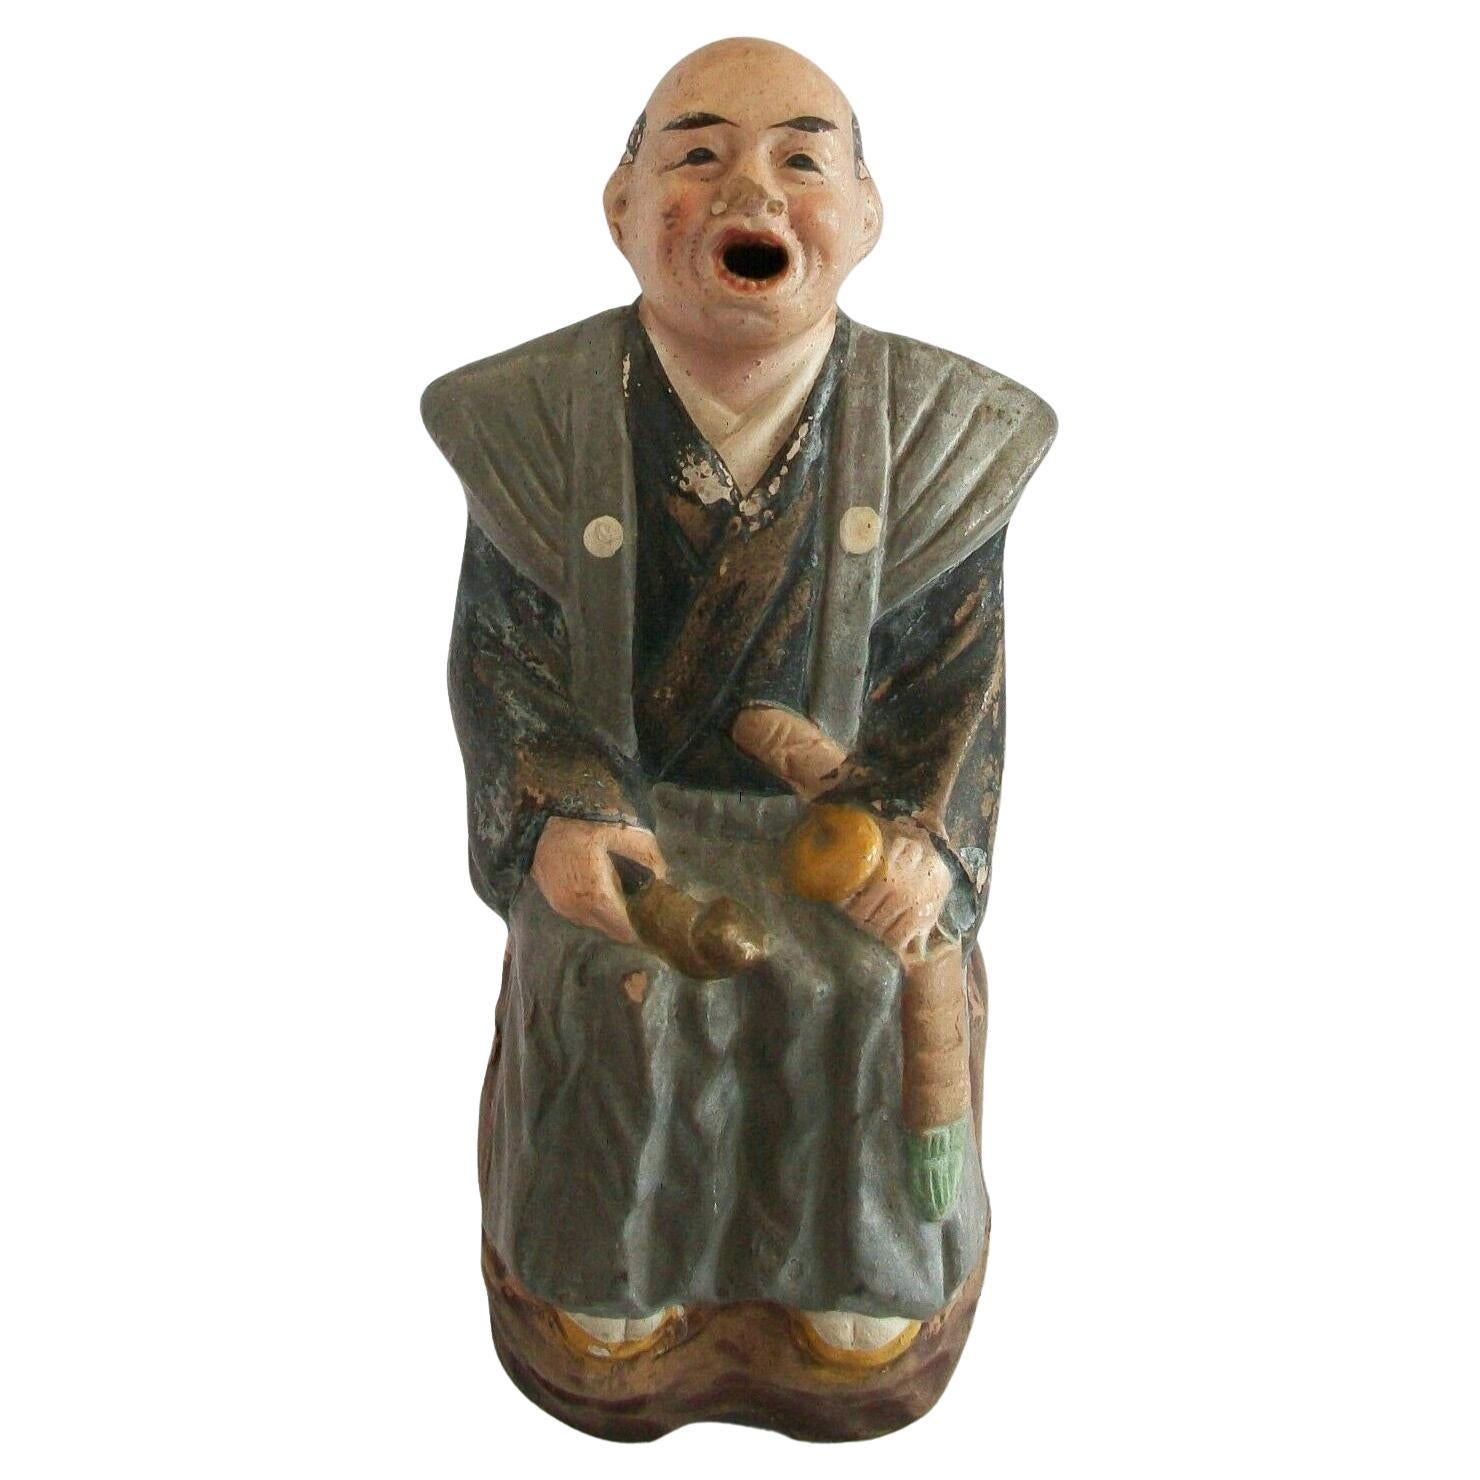 Chinesische Taoistische Yixing-Zisha-Keramik-Figur „Scholar“, kalt bemalt, China, 20. Jahrhundert